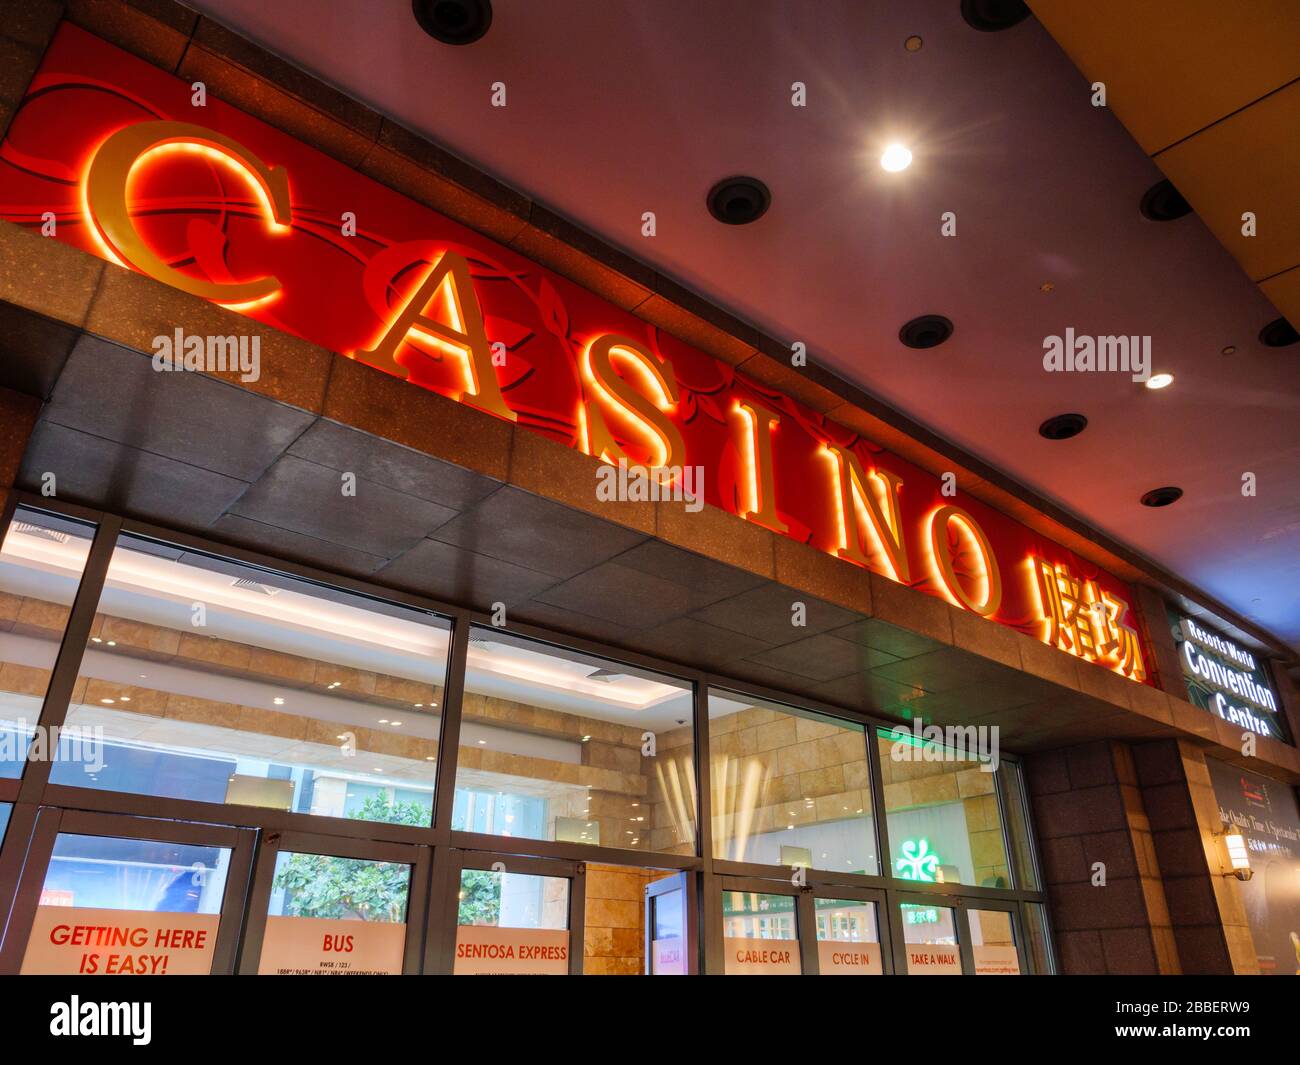 SINGAPUR - 12. März 2020 - Blick auf den Eingang zum Resort World Sentosa Casino auf der Insel Sentosa, Singapur. Die chinesischen Wörter lauten "Casino". Stockfoto